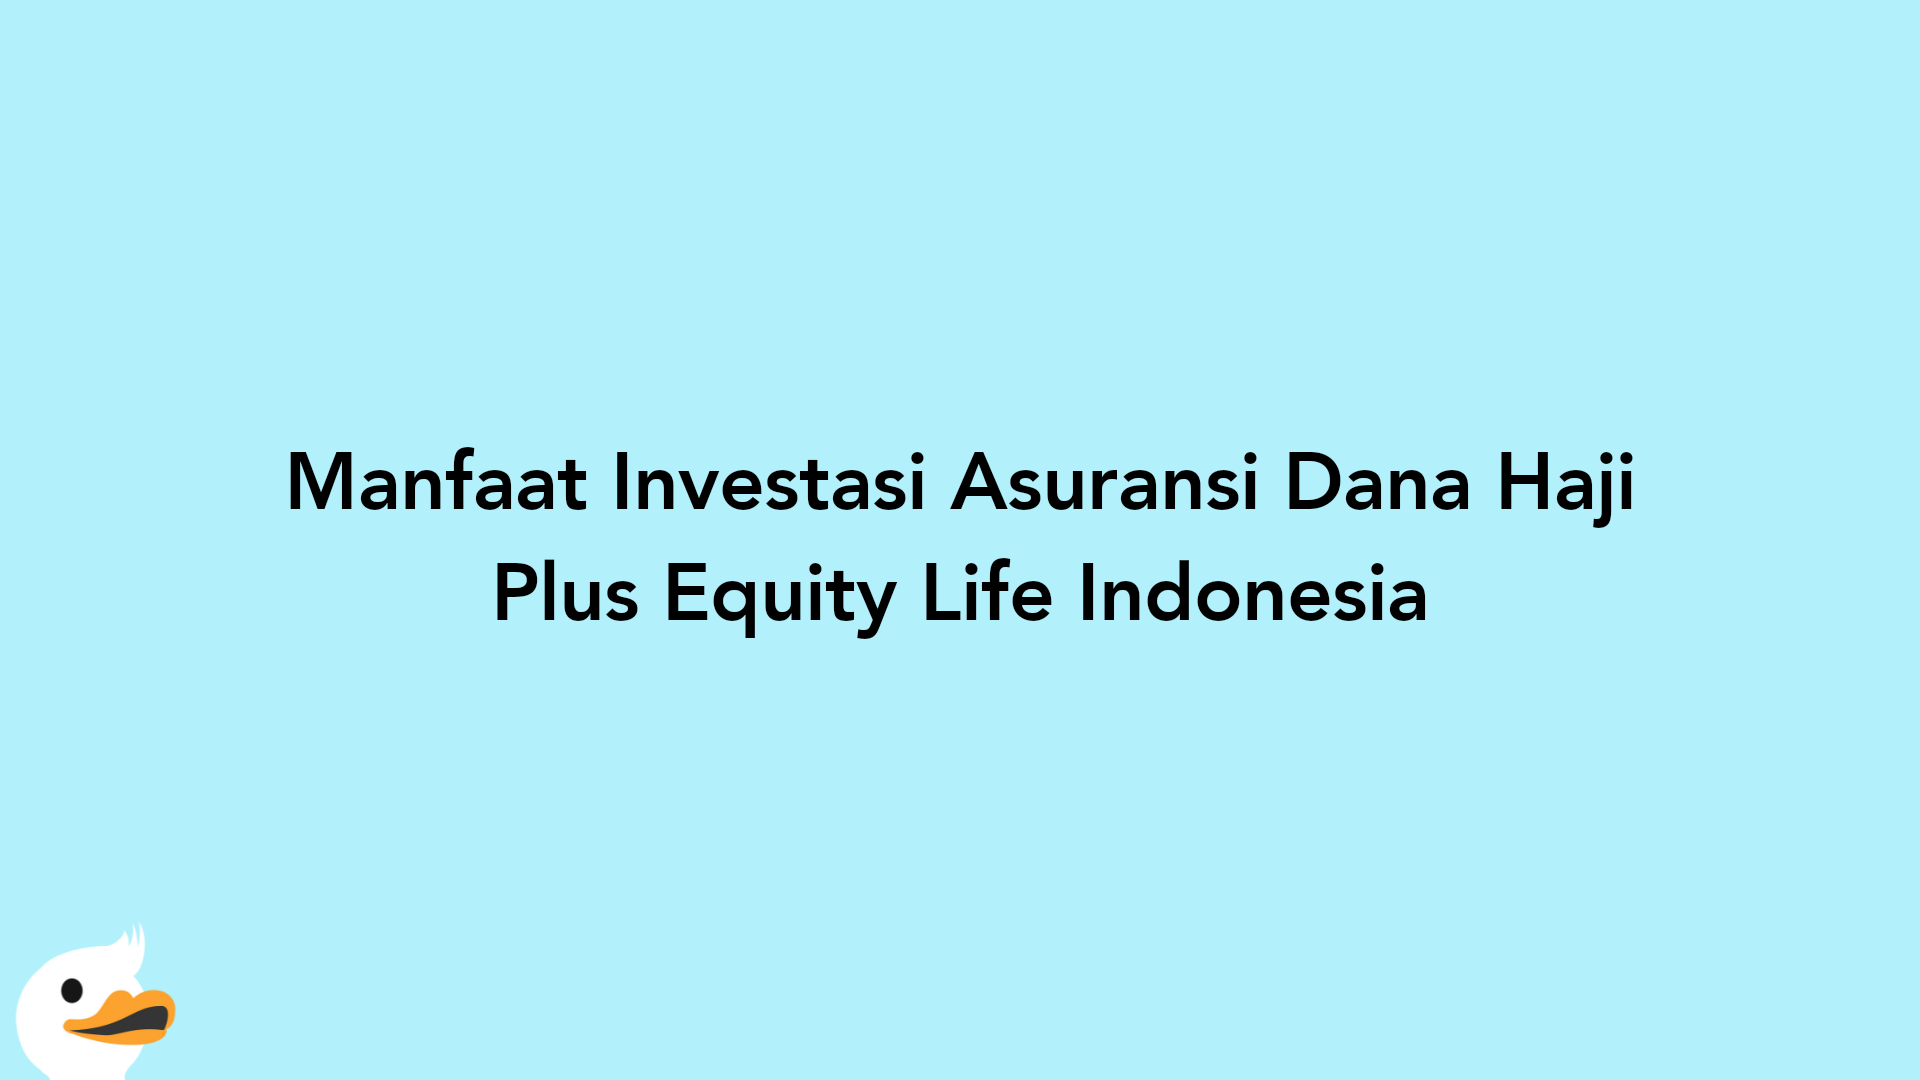 Manfaat Investasi Asuransi Dana Haji Plus Equity Life Indonesia